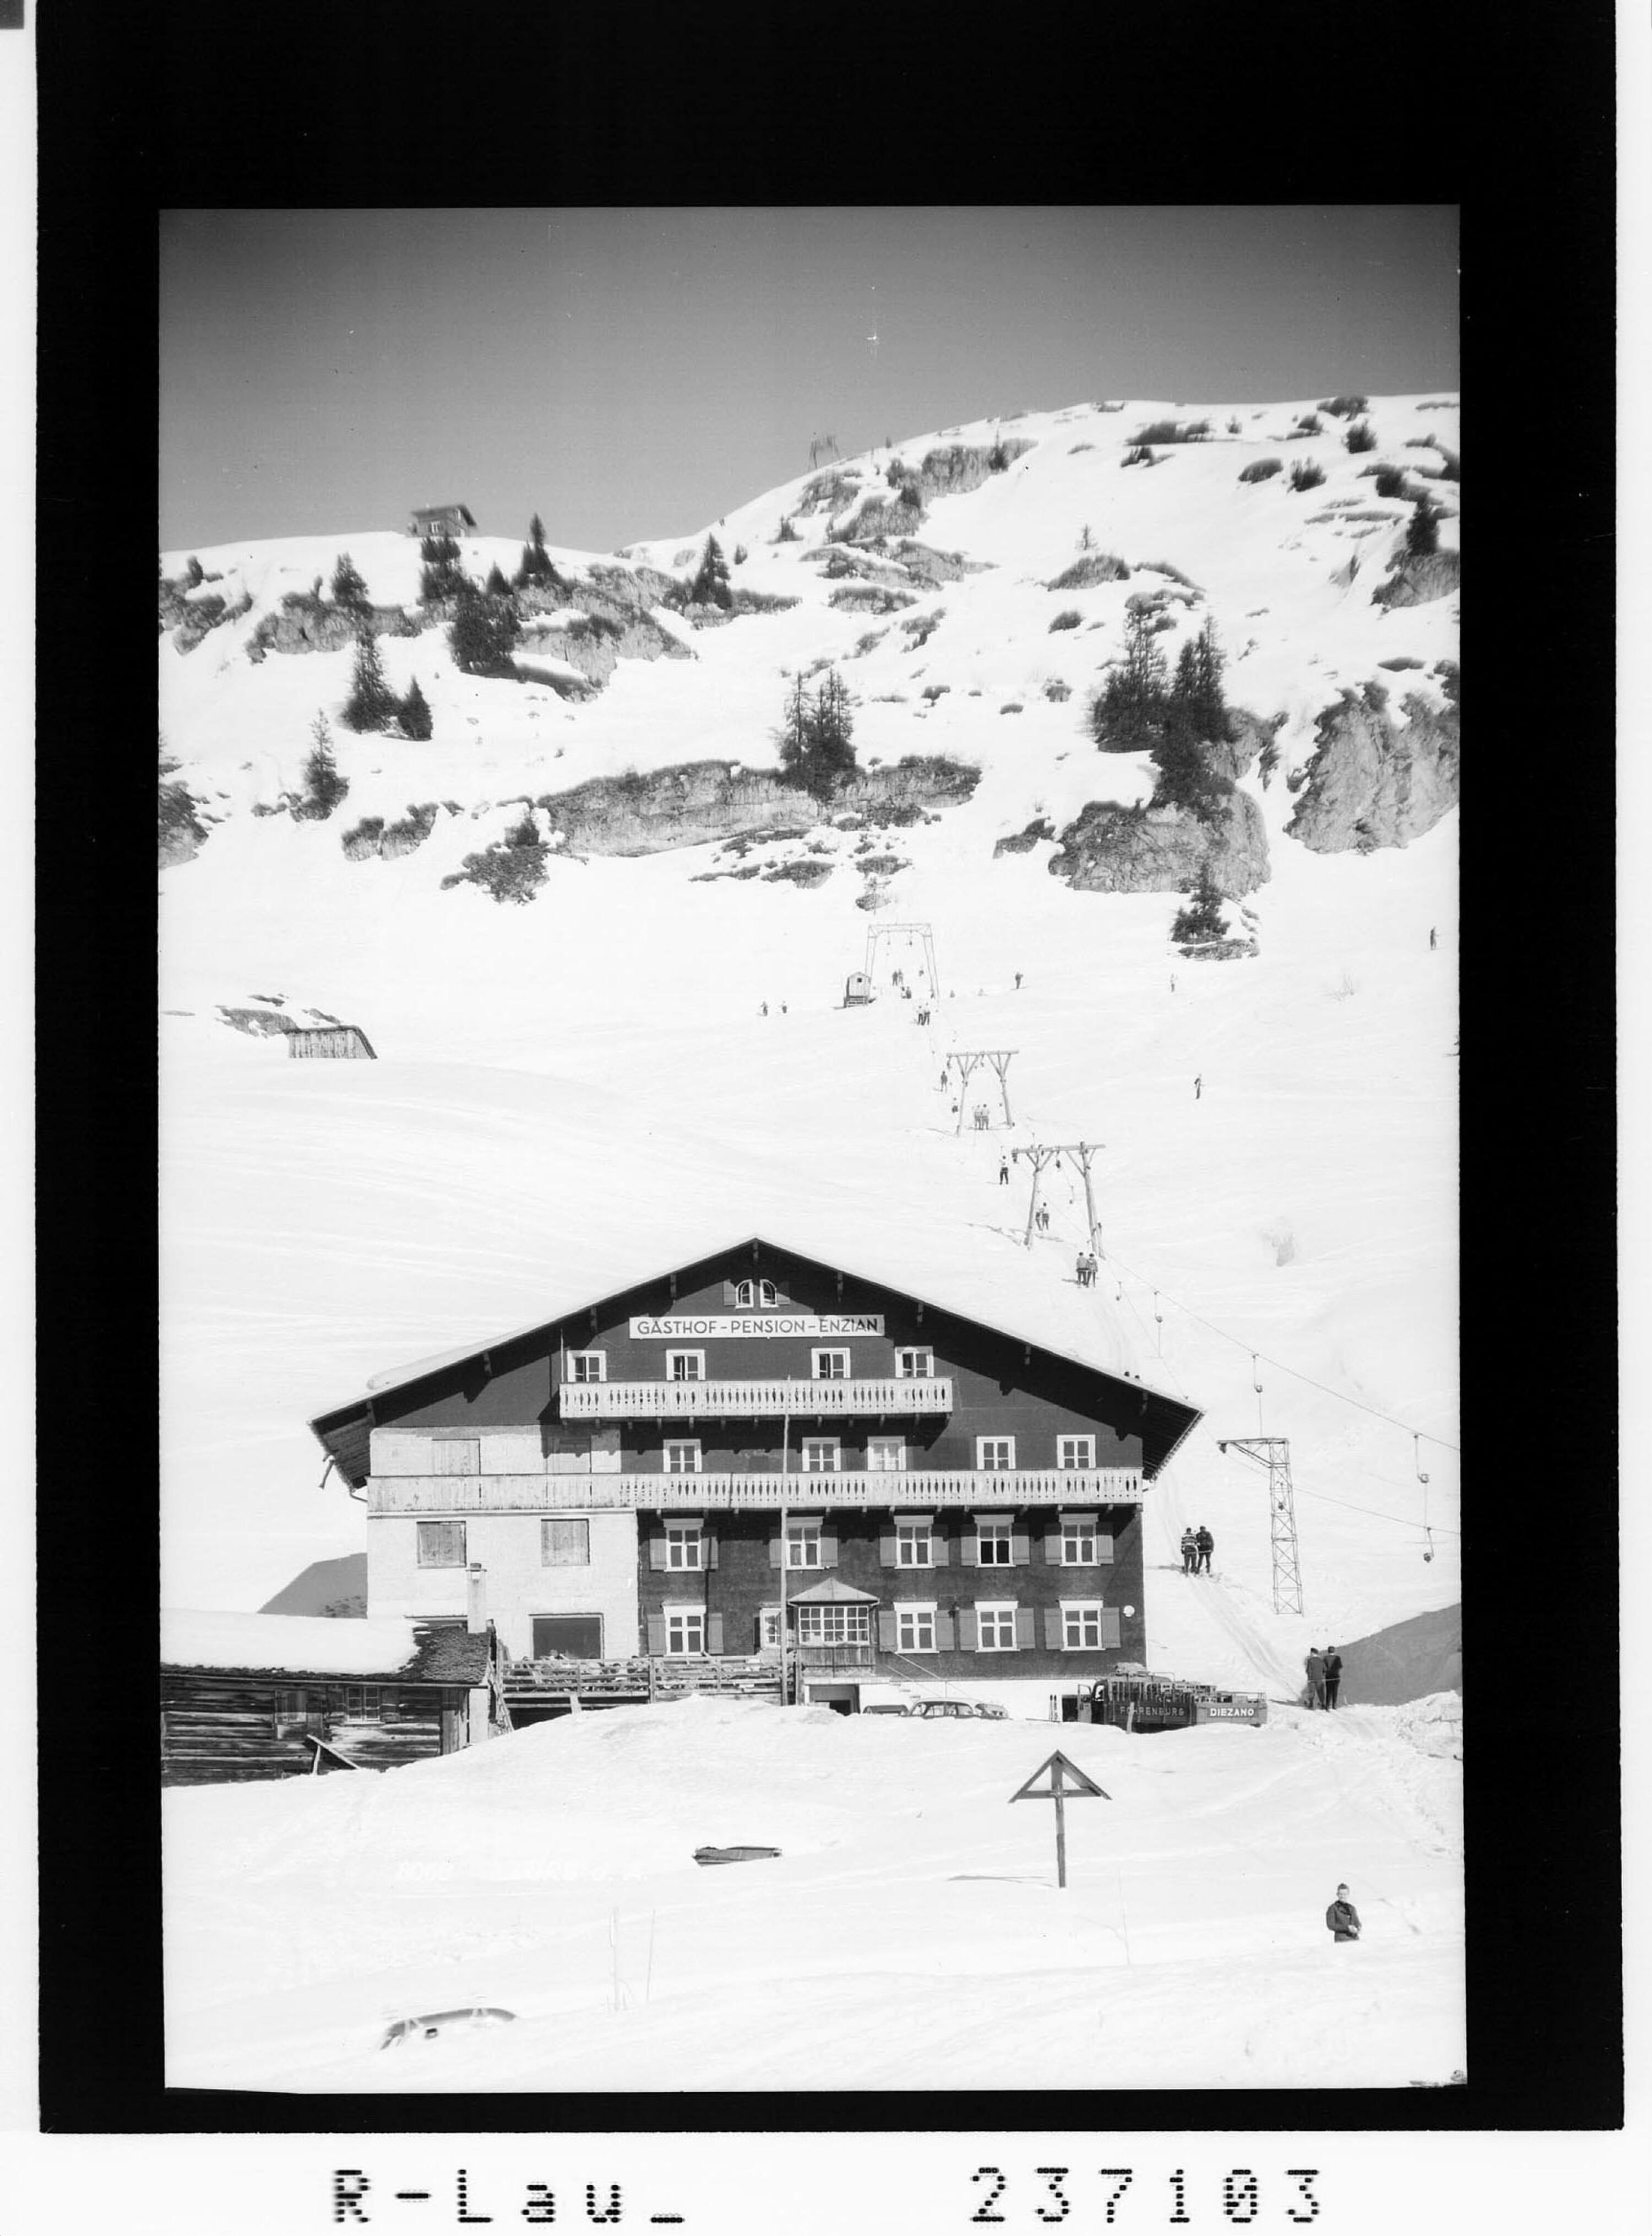 Zürs am Arlberg></div>


    <hr>
    <div class=